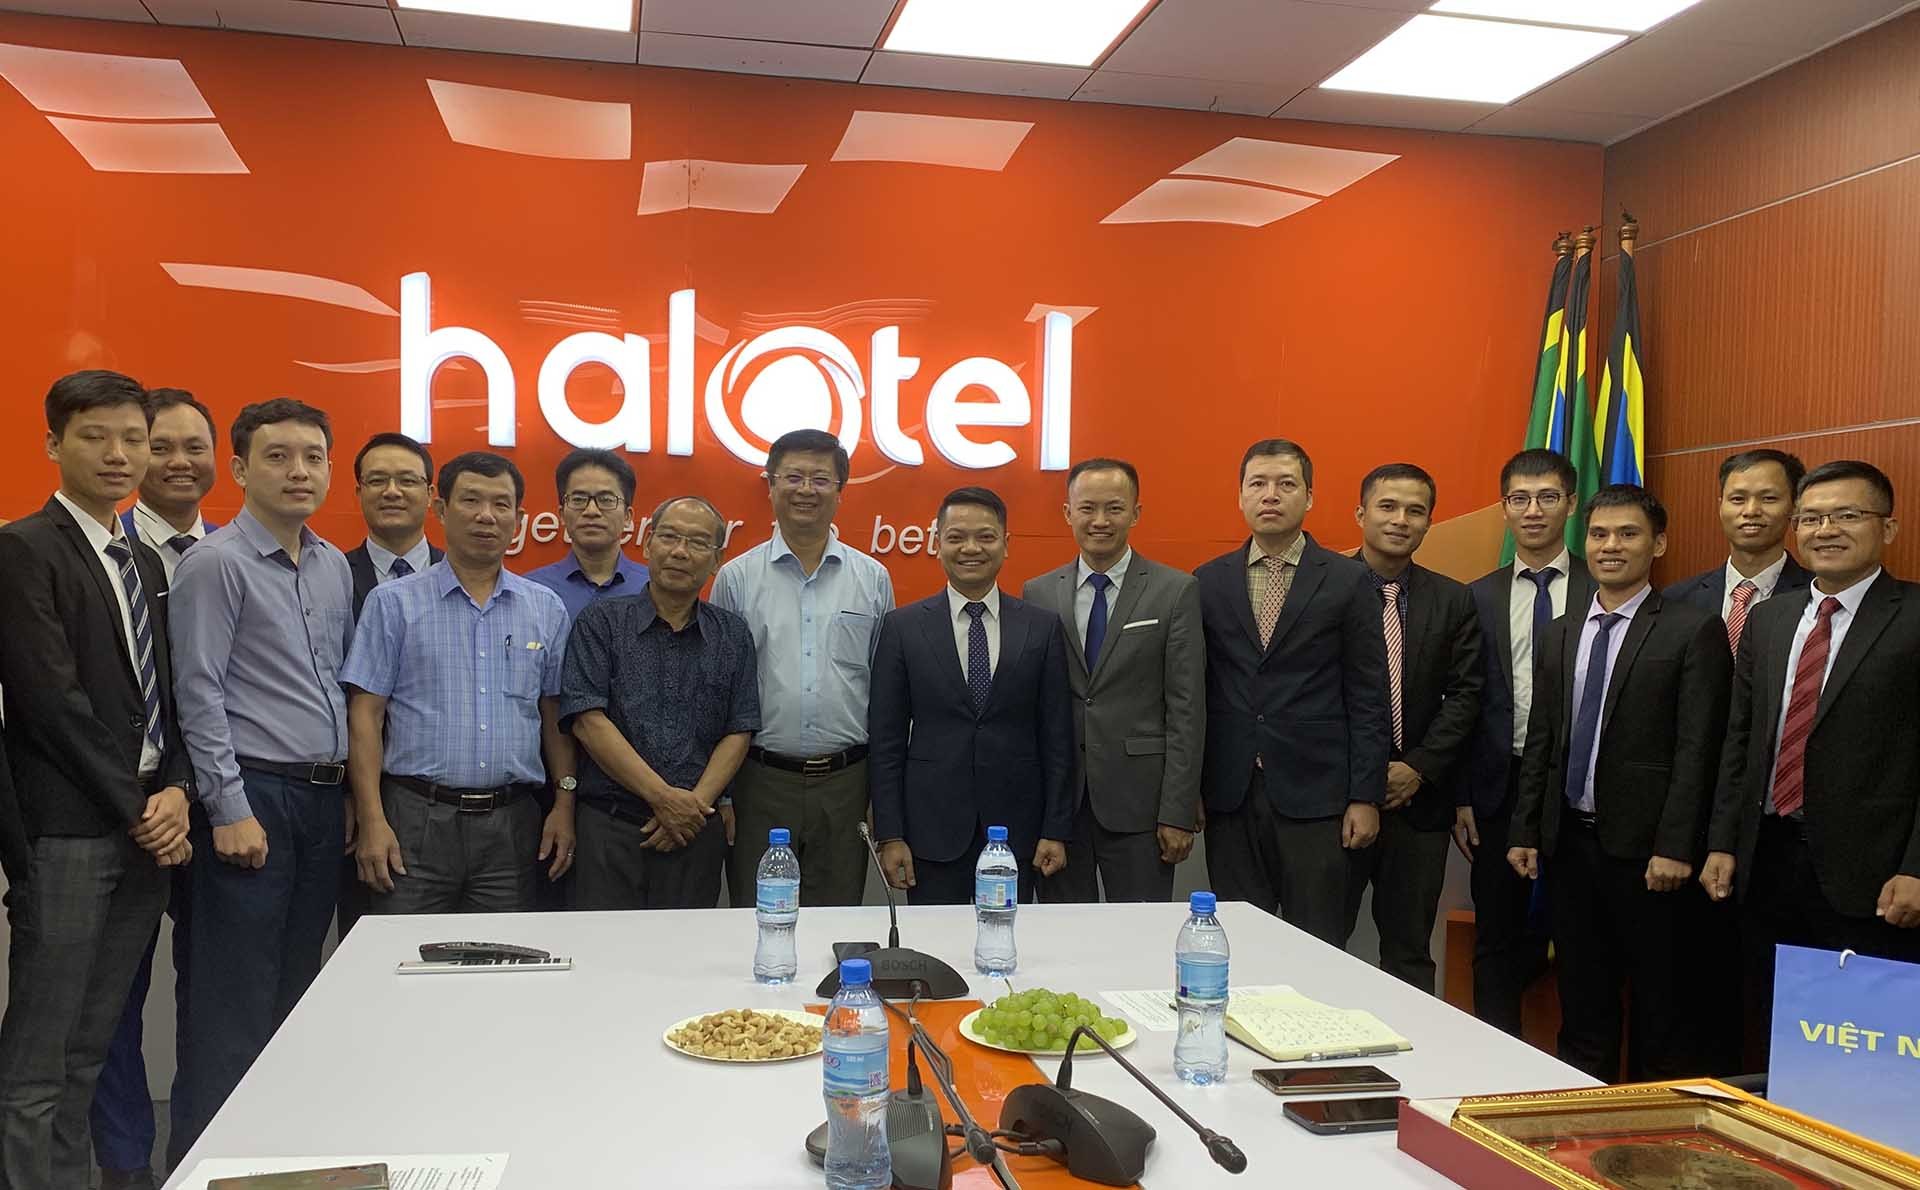 Đồng chí Trương Quang Hoài Nam thăm cán bộ nhân viên Công ty Halotel.